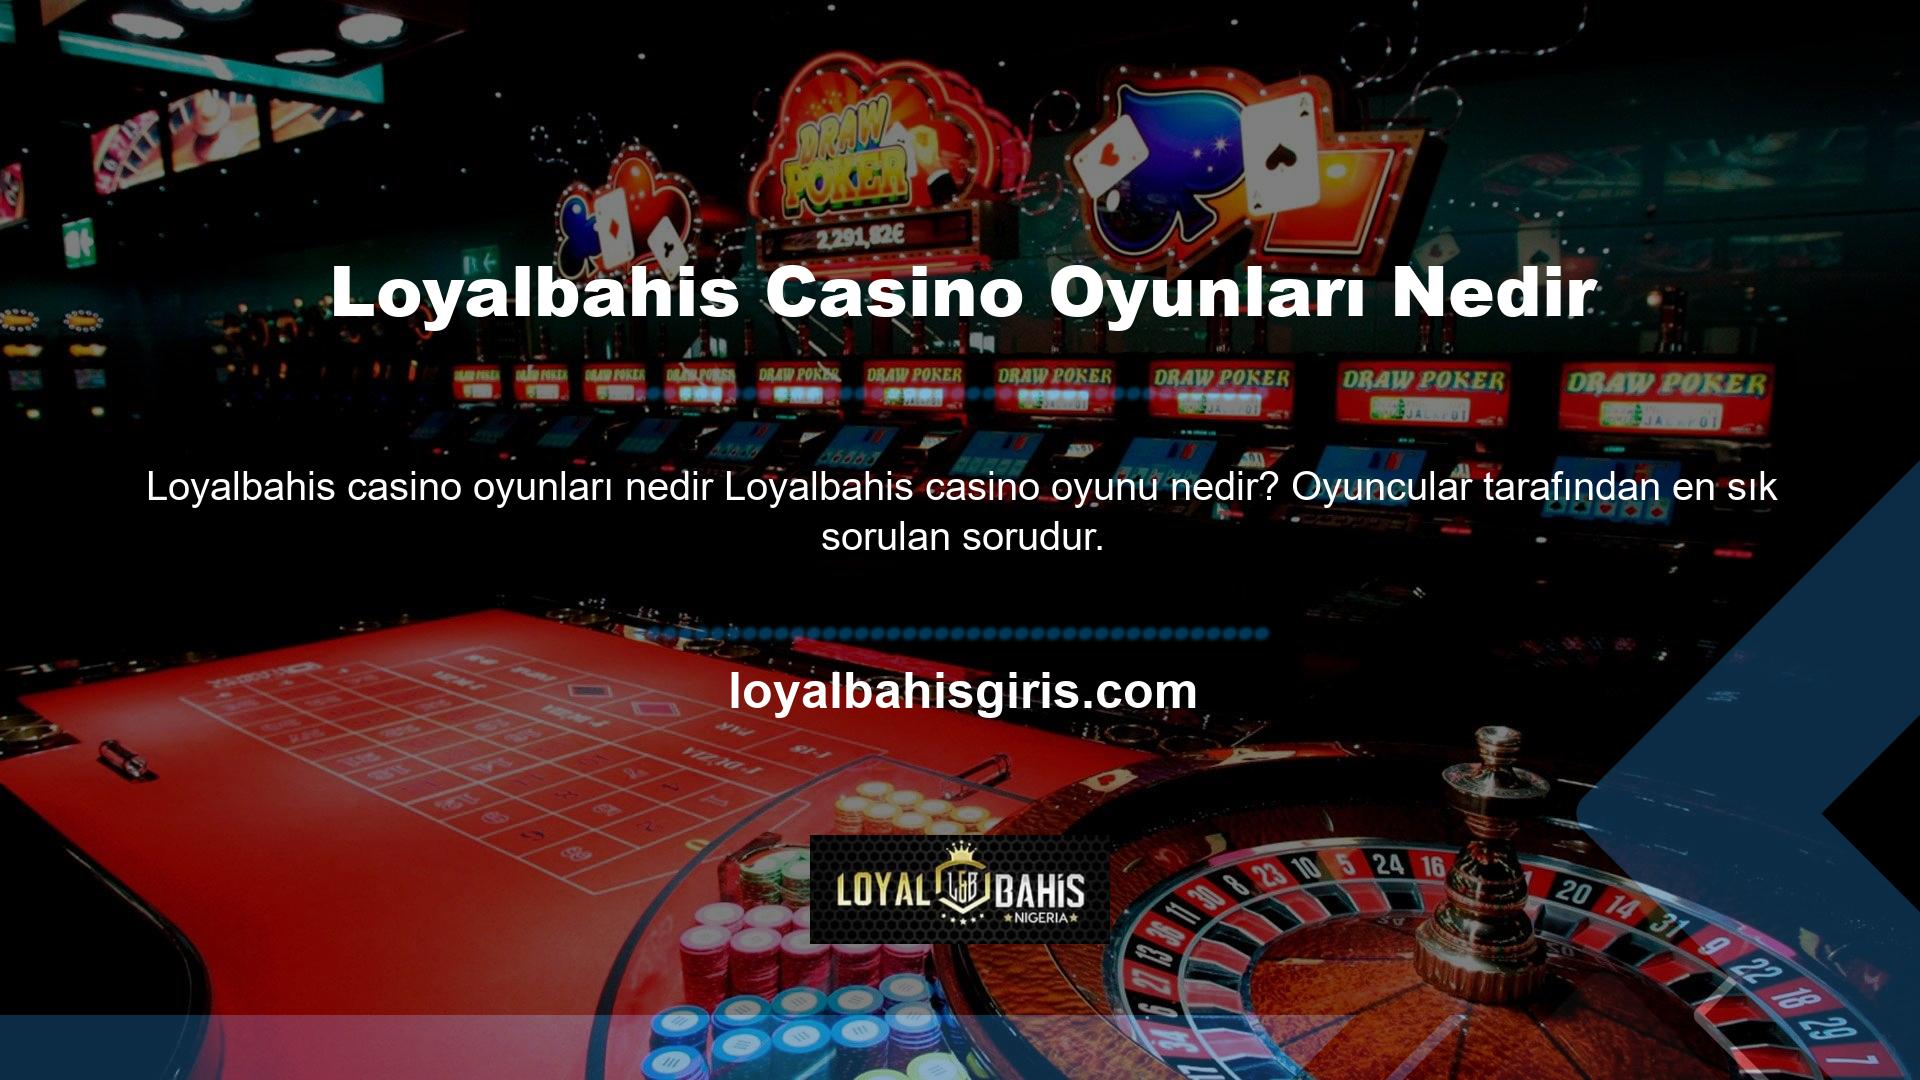 Loyalbahis casino oyunları geniş oyun yelpazesiyle dikkat çekmektedir